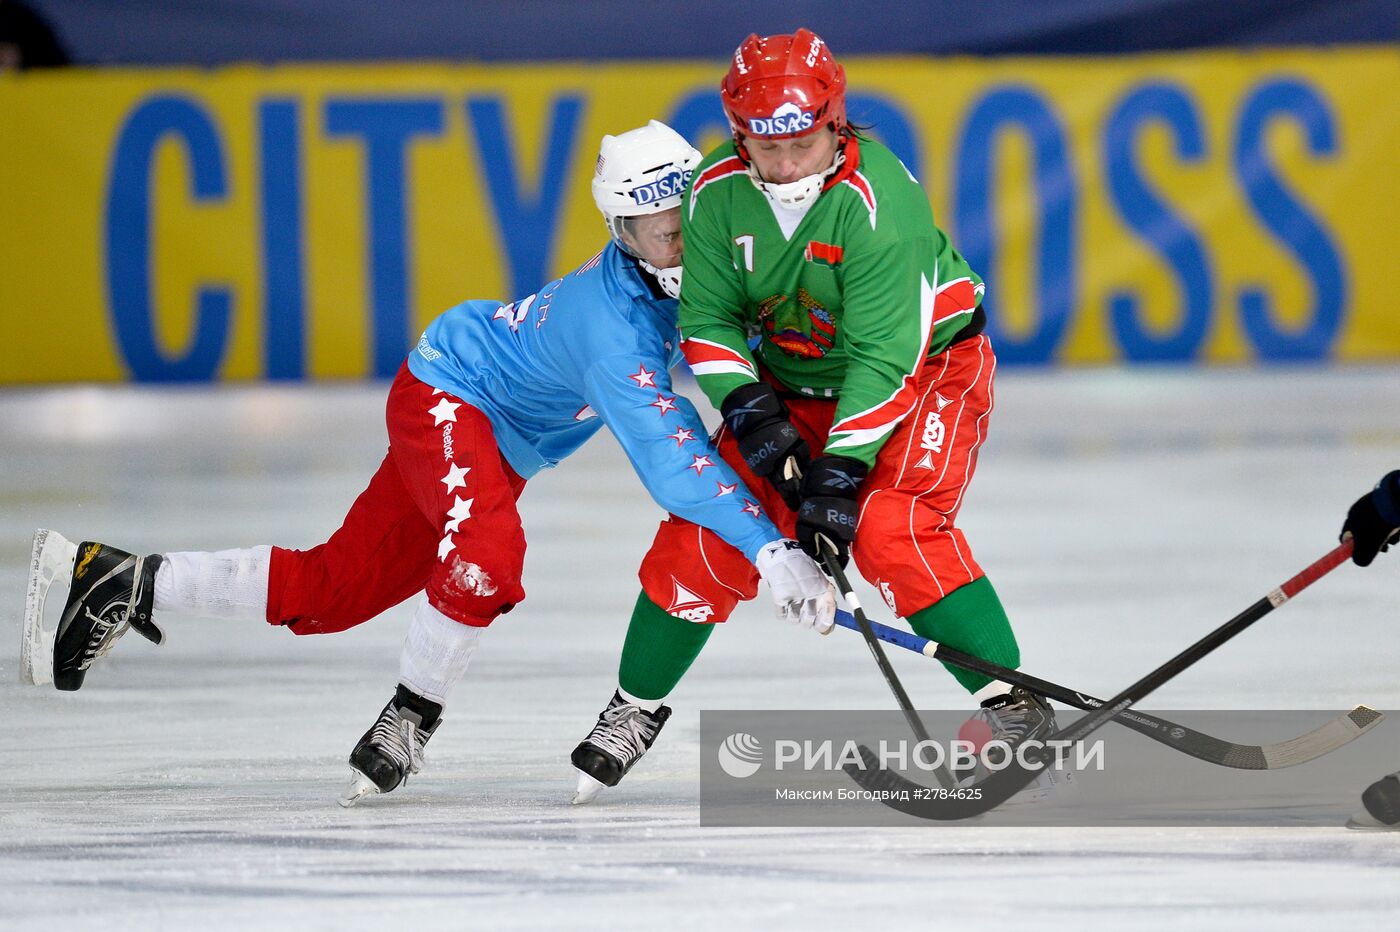 Хоккей с мячом. Чемпионат мира. Матч Белоруссия - США